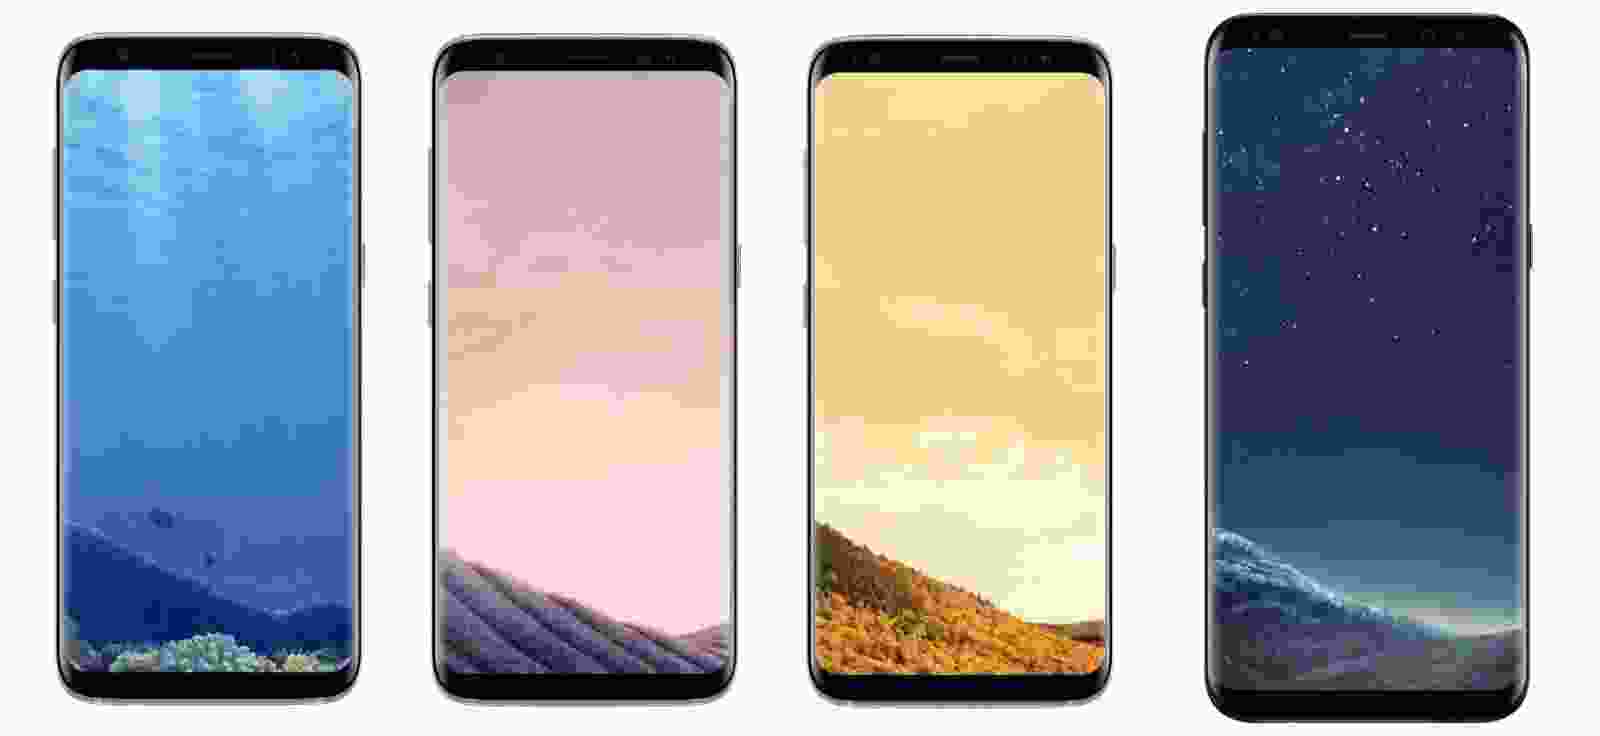 Hình nền Galaxy S8: Bạn muốn mang lại cho điện thoại của mình phong cách khác biệt và độc đáo? Hãy khám phá bộ sưu tập hình nền Galaxy S8 với hình ảnh đẹp lung linh, sắc nét, chất lượng cao giúp cho màn hình điện thoại của bạn trở nên sáng đẹp hơn bao giờ hết.